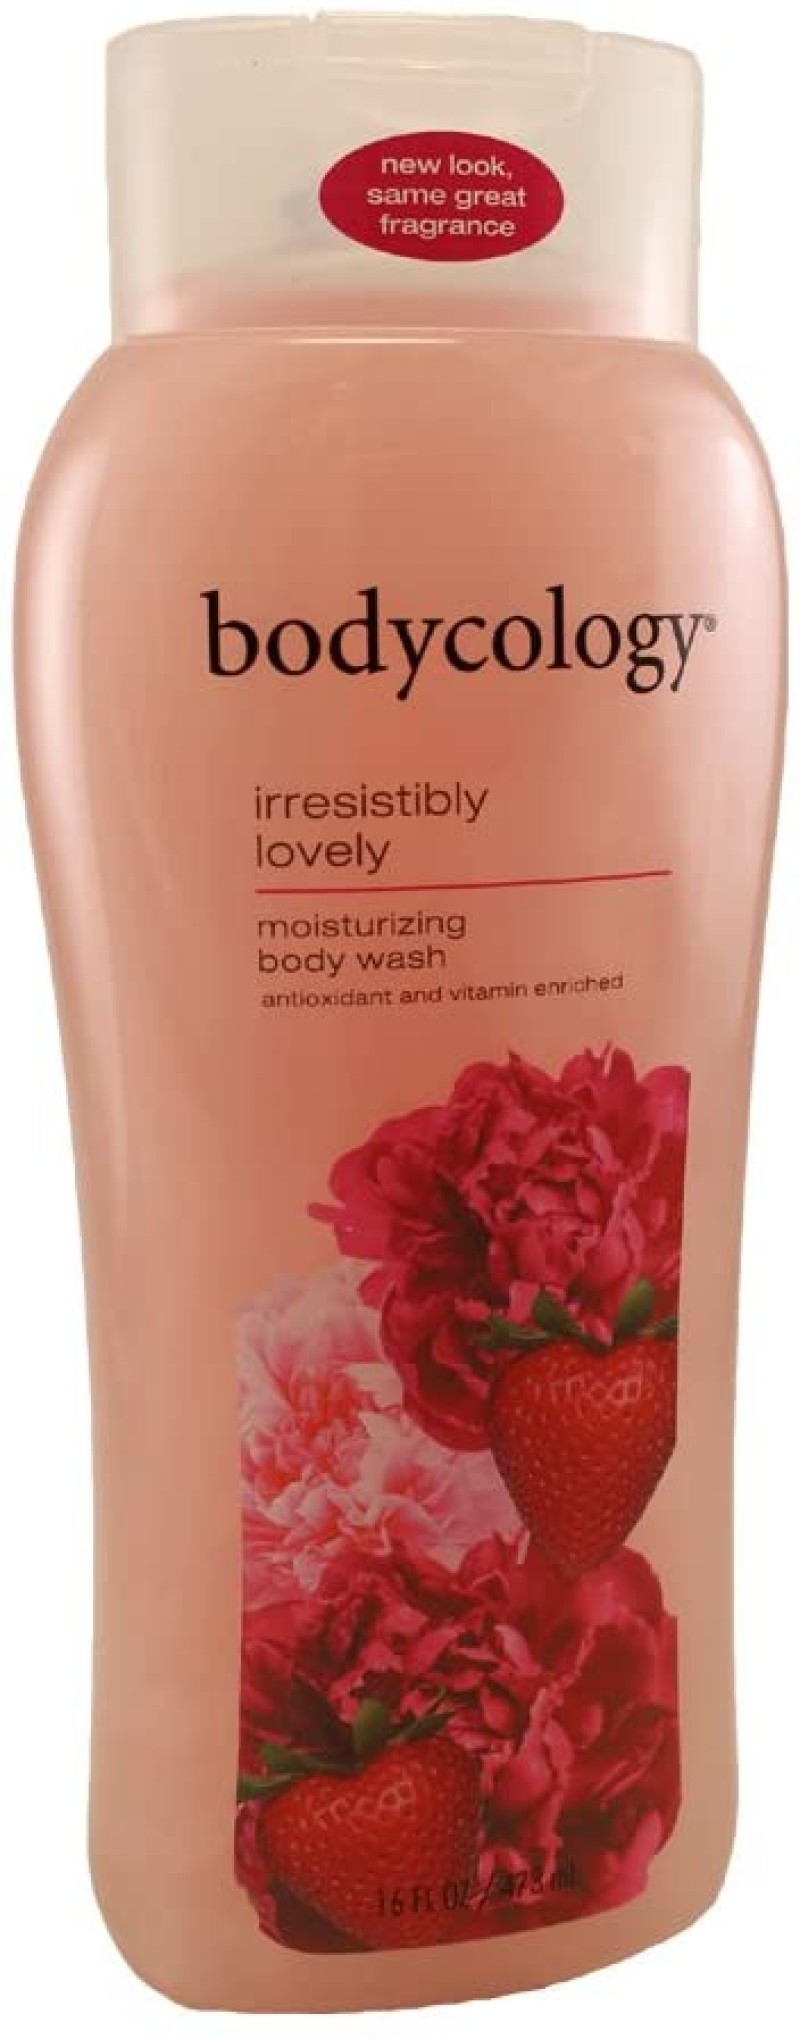 Bodycology Irresistibly Lovely Moisturizing Body Wash 16 fl oz